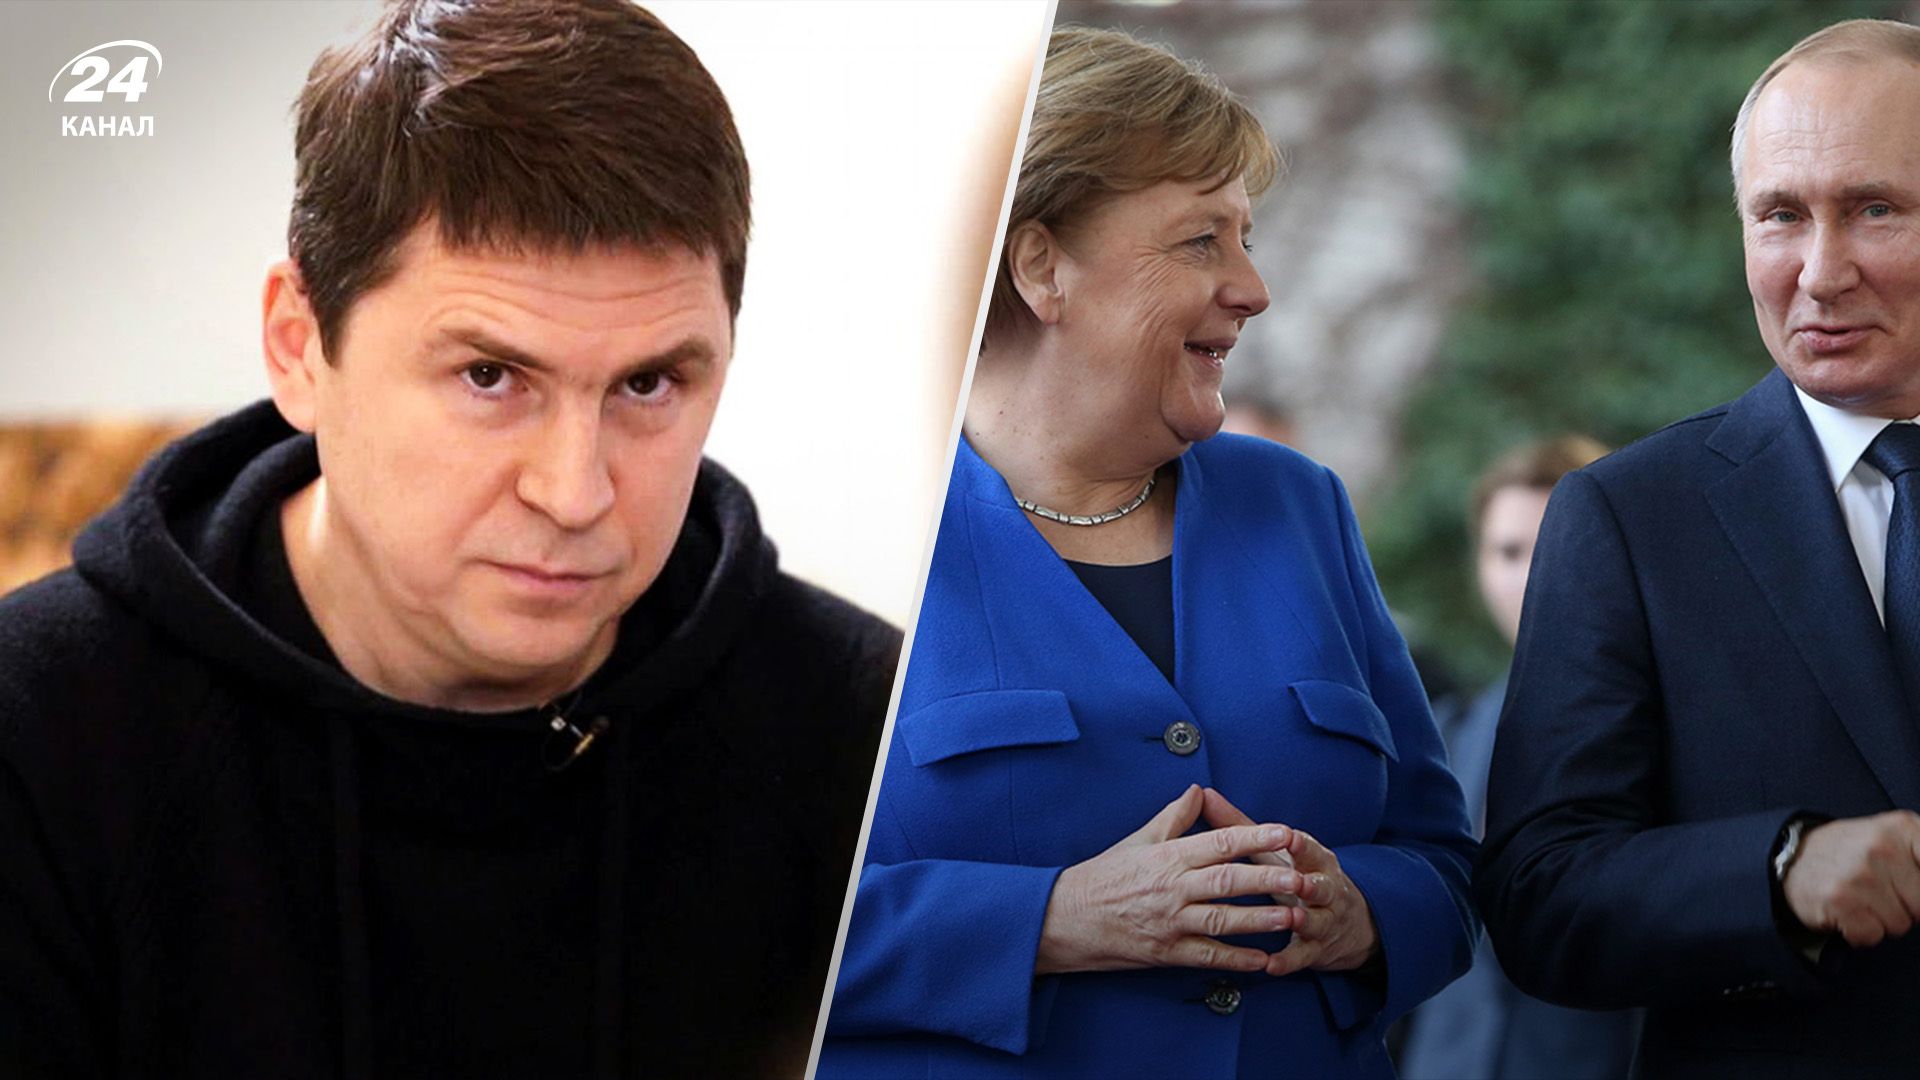 Прекратите оправдываться, – Подоляк жестко раскритиковал Меркель за политику в отношении России - 24 Канал